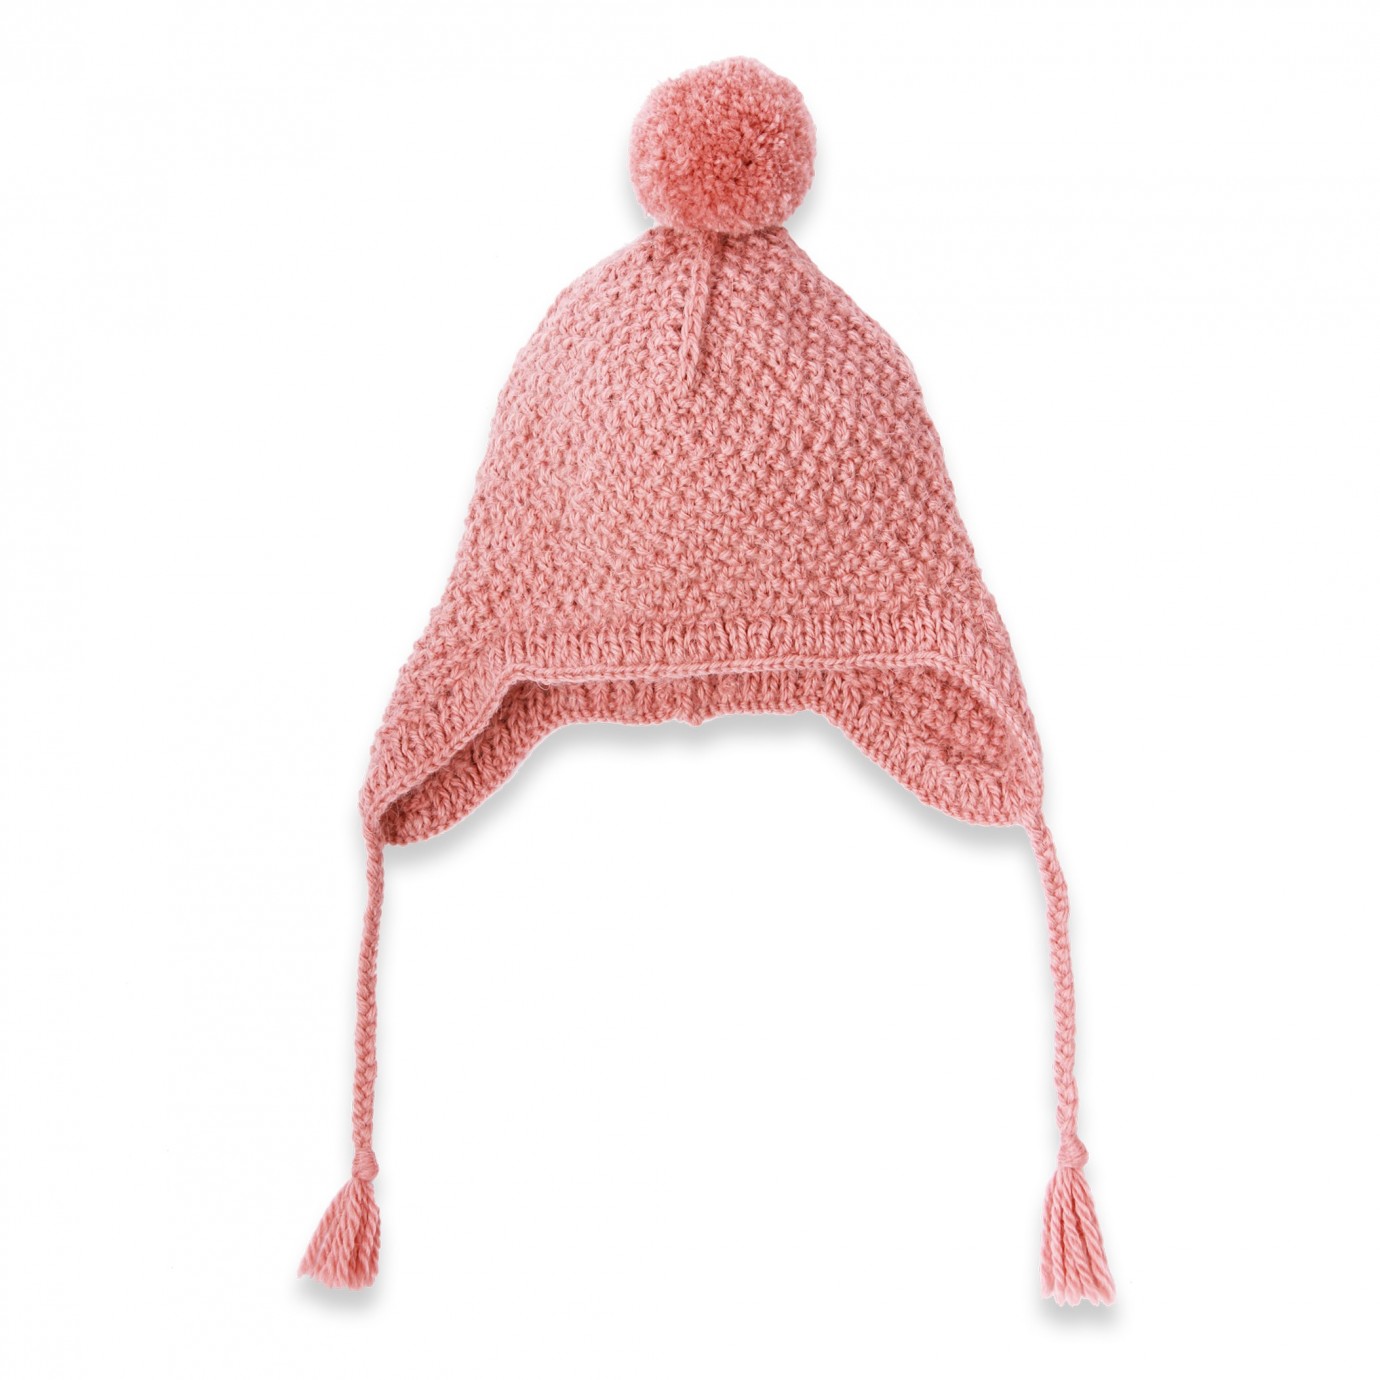 https://www.mamyfactory.com/8816-thickbox_default/modele-tricot-bonnet-chapeau-bebe-enfant-laine-cachemire.jpg